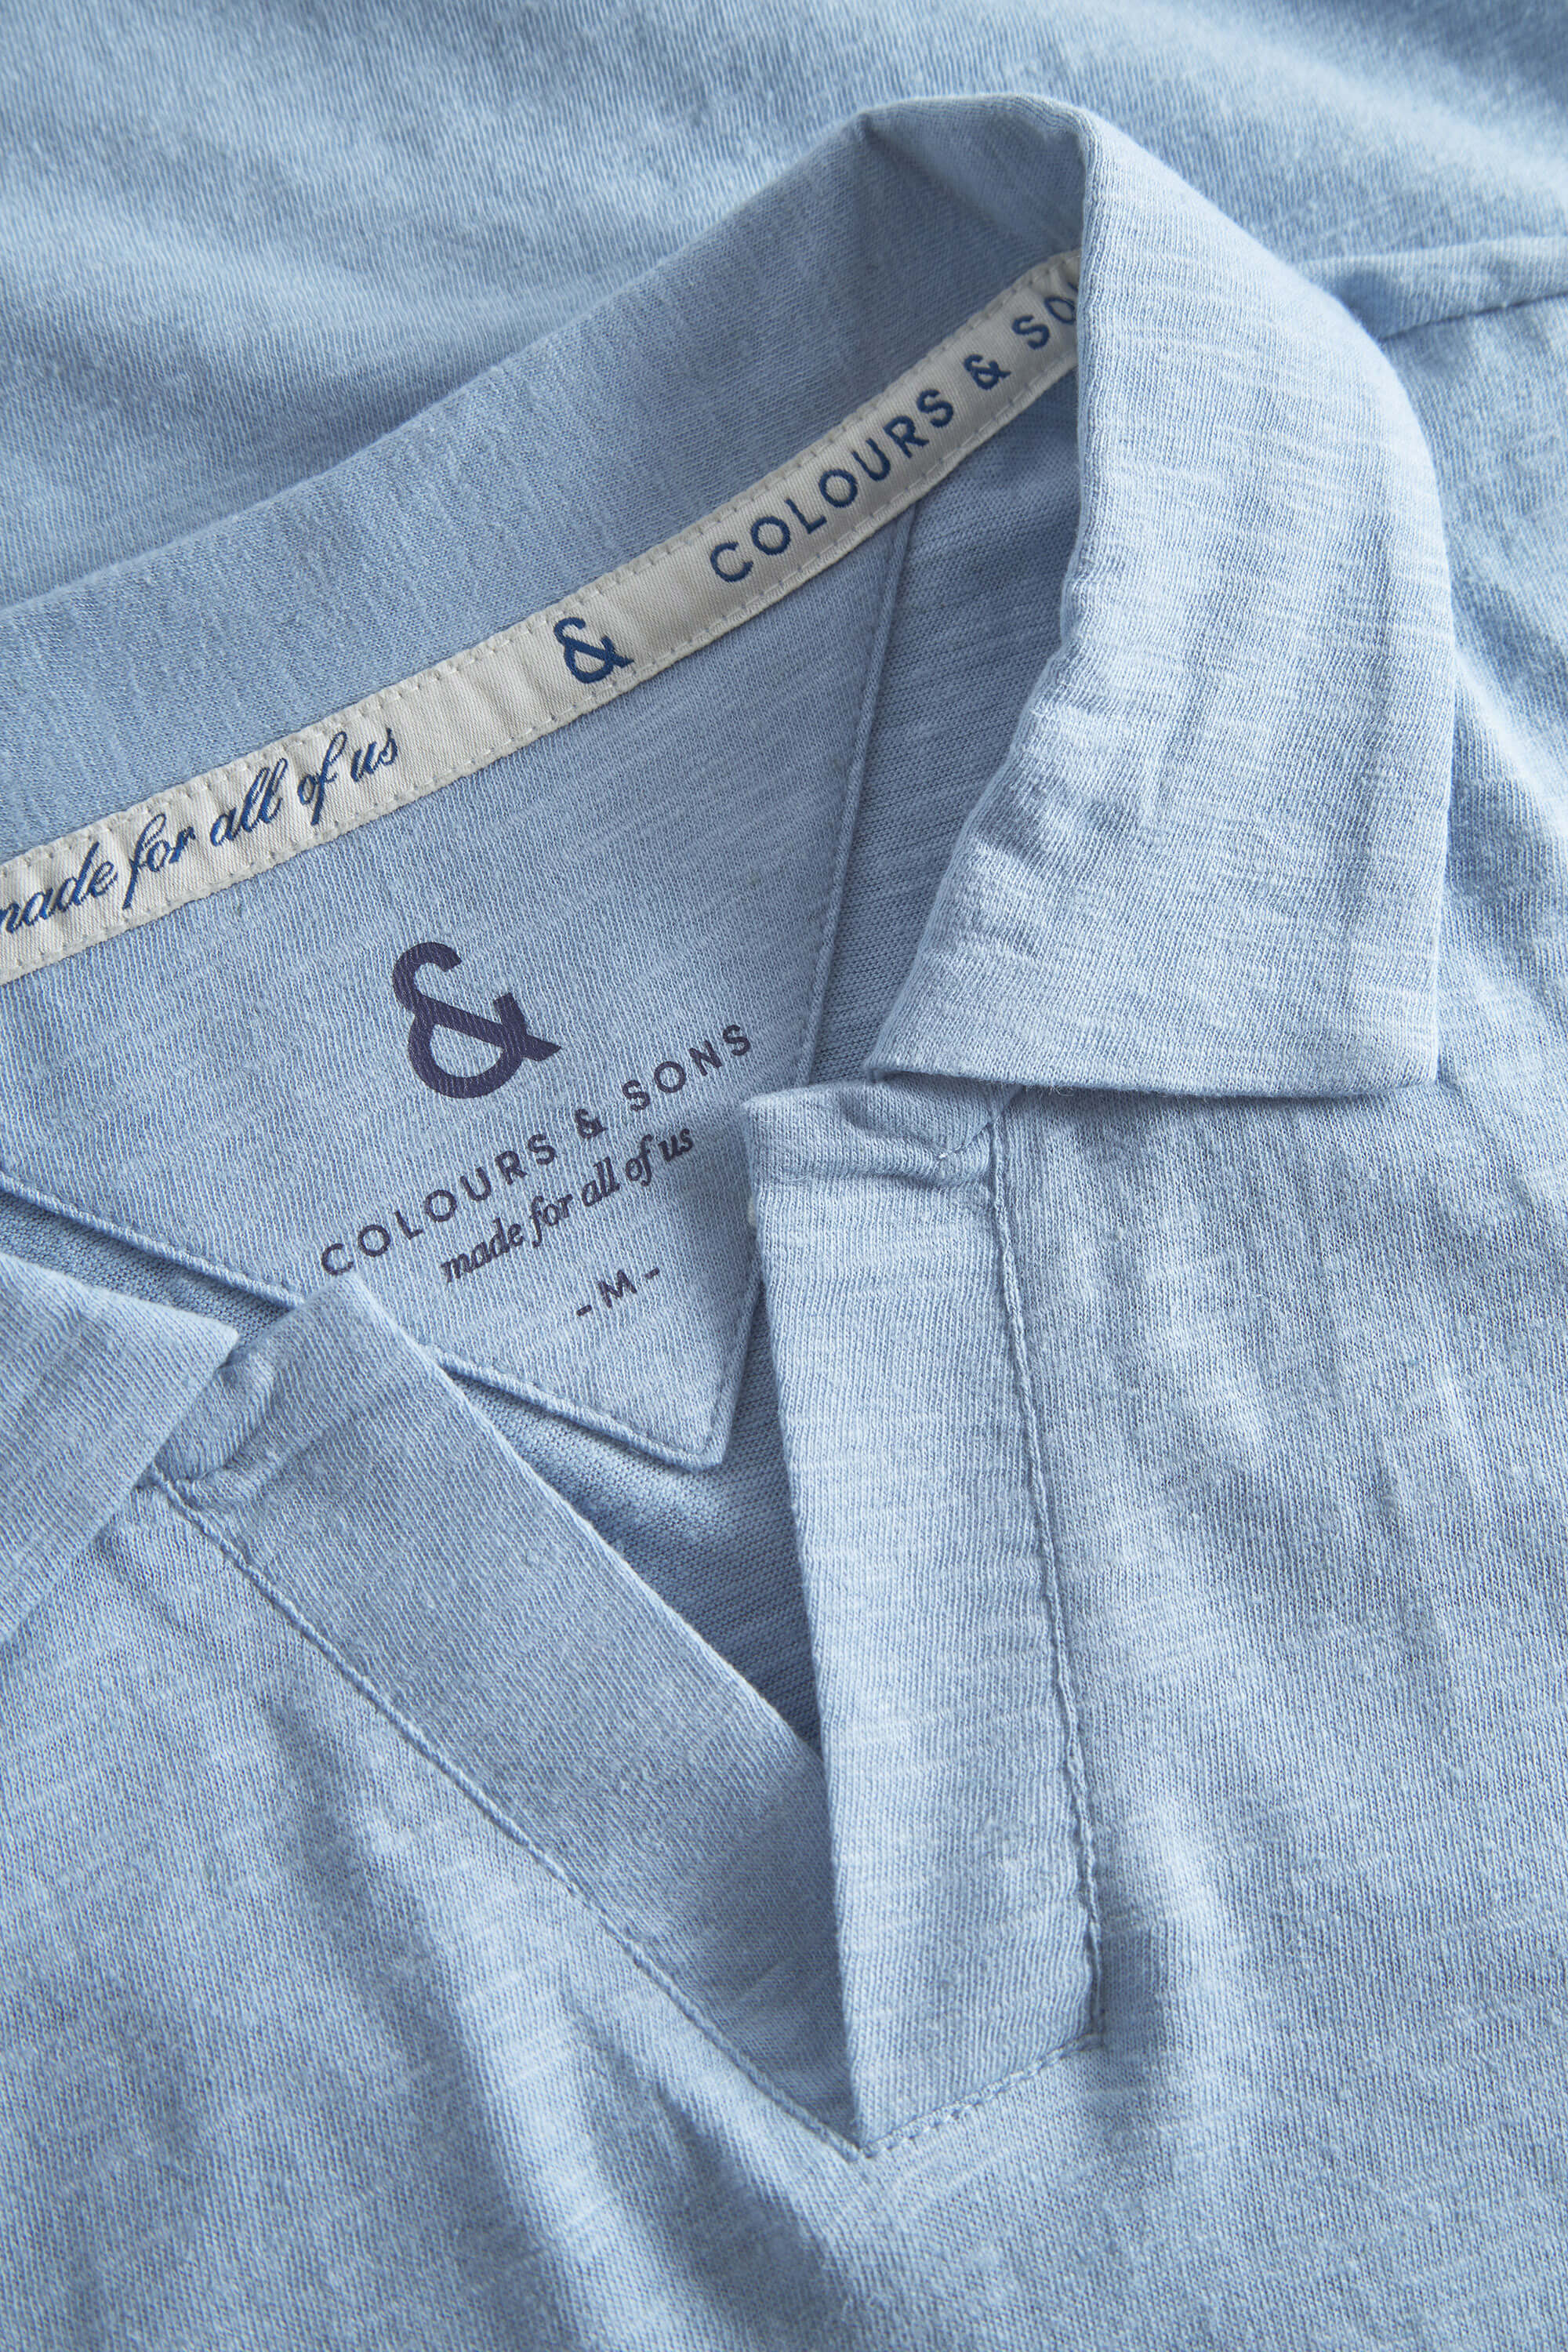 Herren Poloshirt, hellblau, 75% Baumwolle 25% Leinen von Colours & Sons